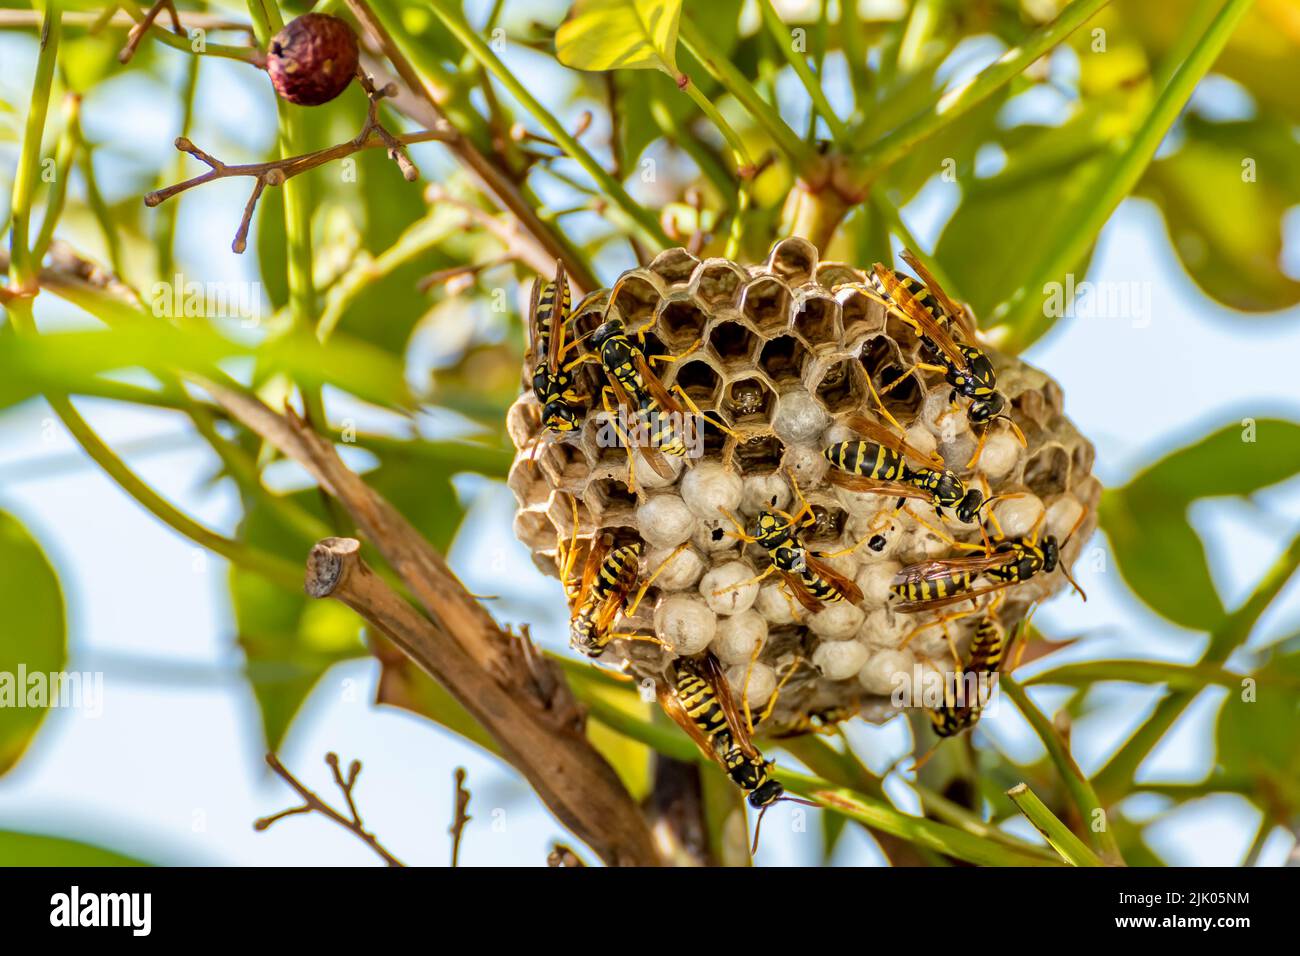 Un nido di vespa nel mezzo della vegetazione, con molte vespe che si muovono sulla superficie Foto Stock